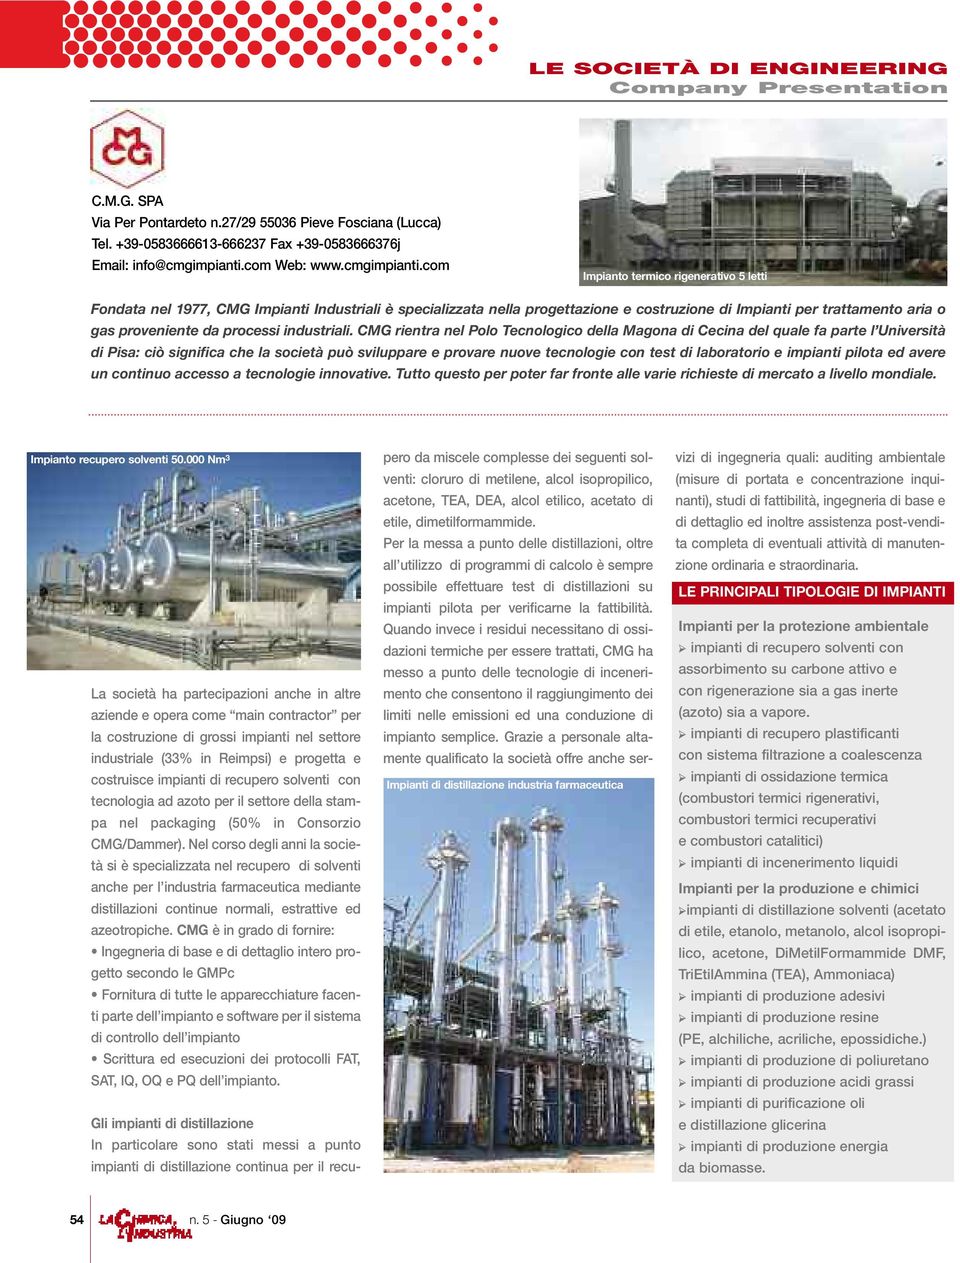 com Impianto termico rigenerativo 5 letti Fondata nel 1977, CMG Impianti Industriali è specializzata nella progettazione e costruzione di Impianti per trattamento aria o gas proveniente da processi